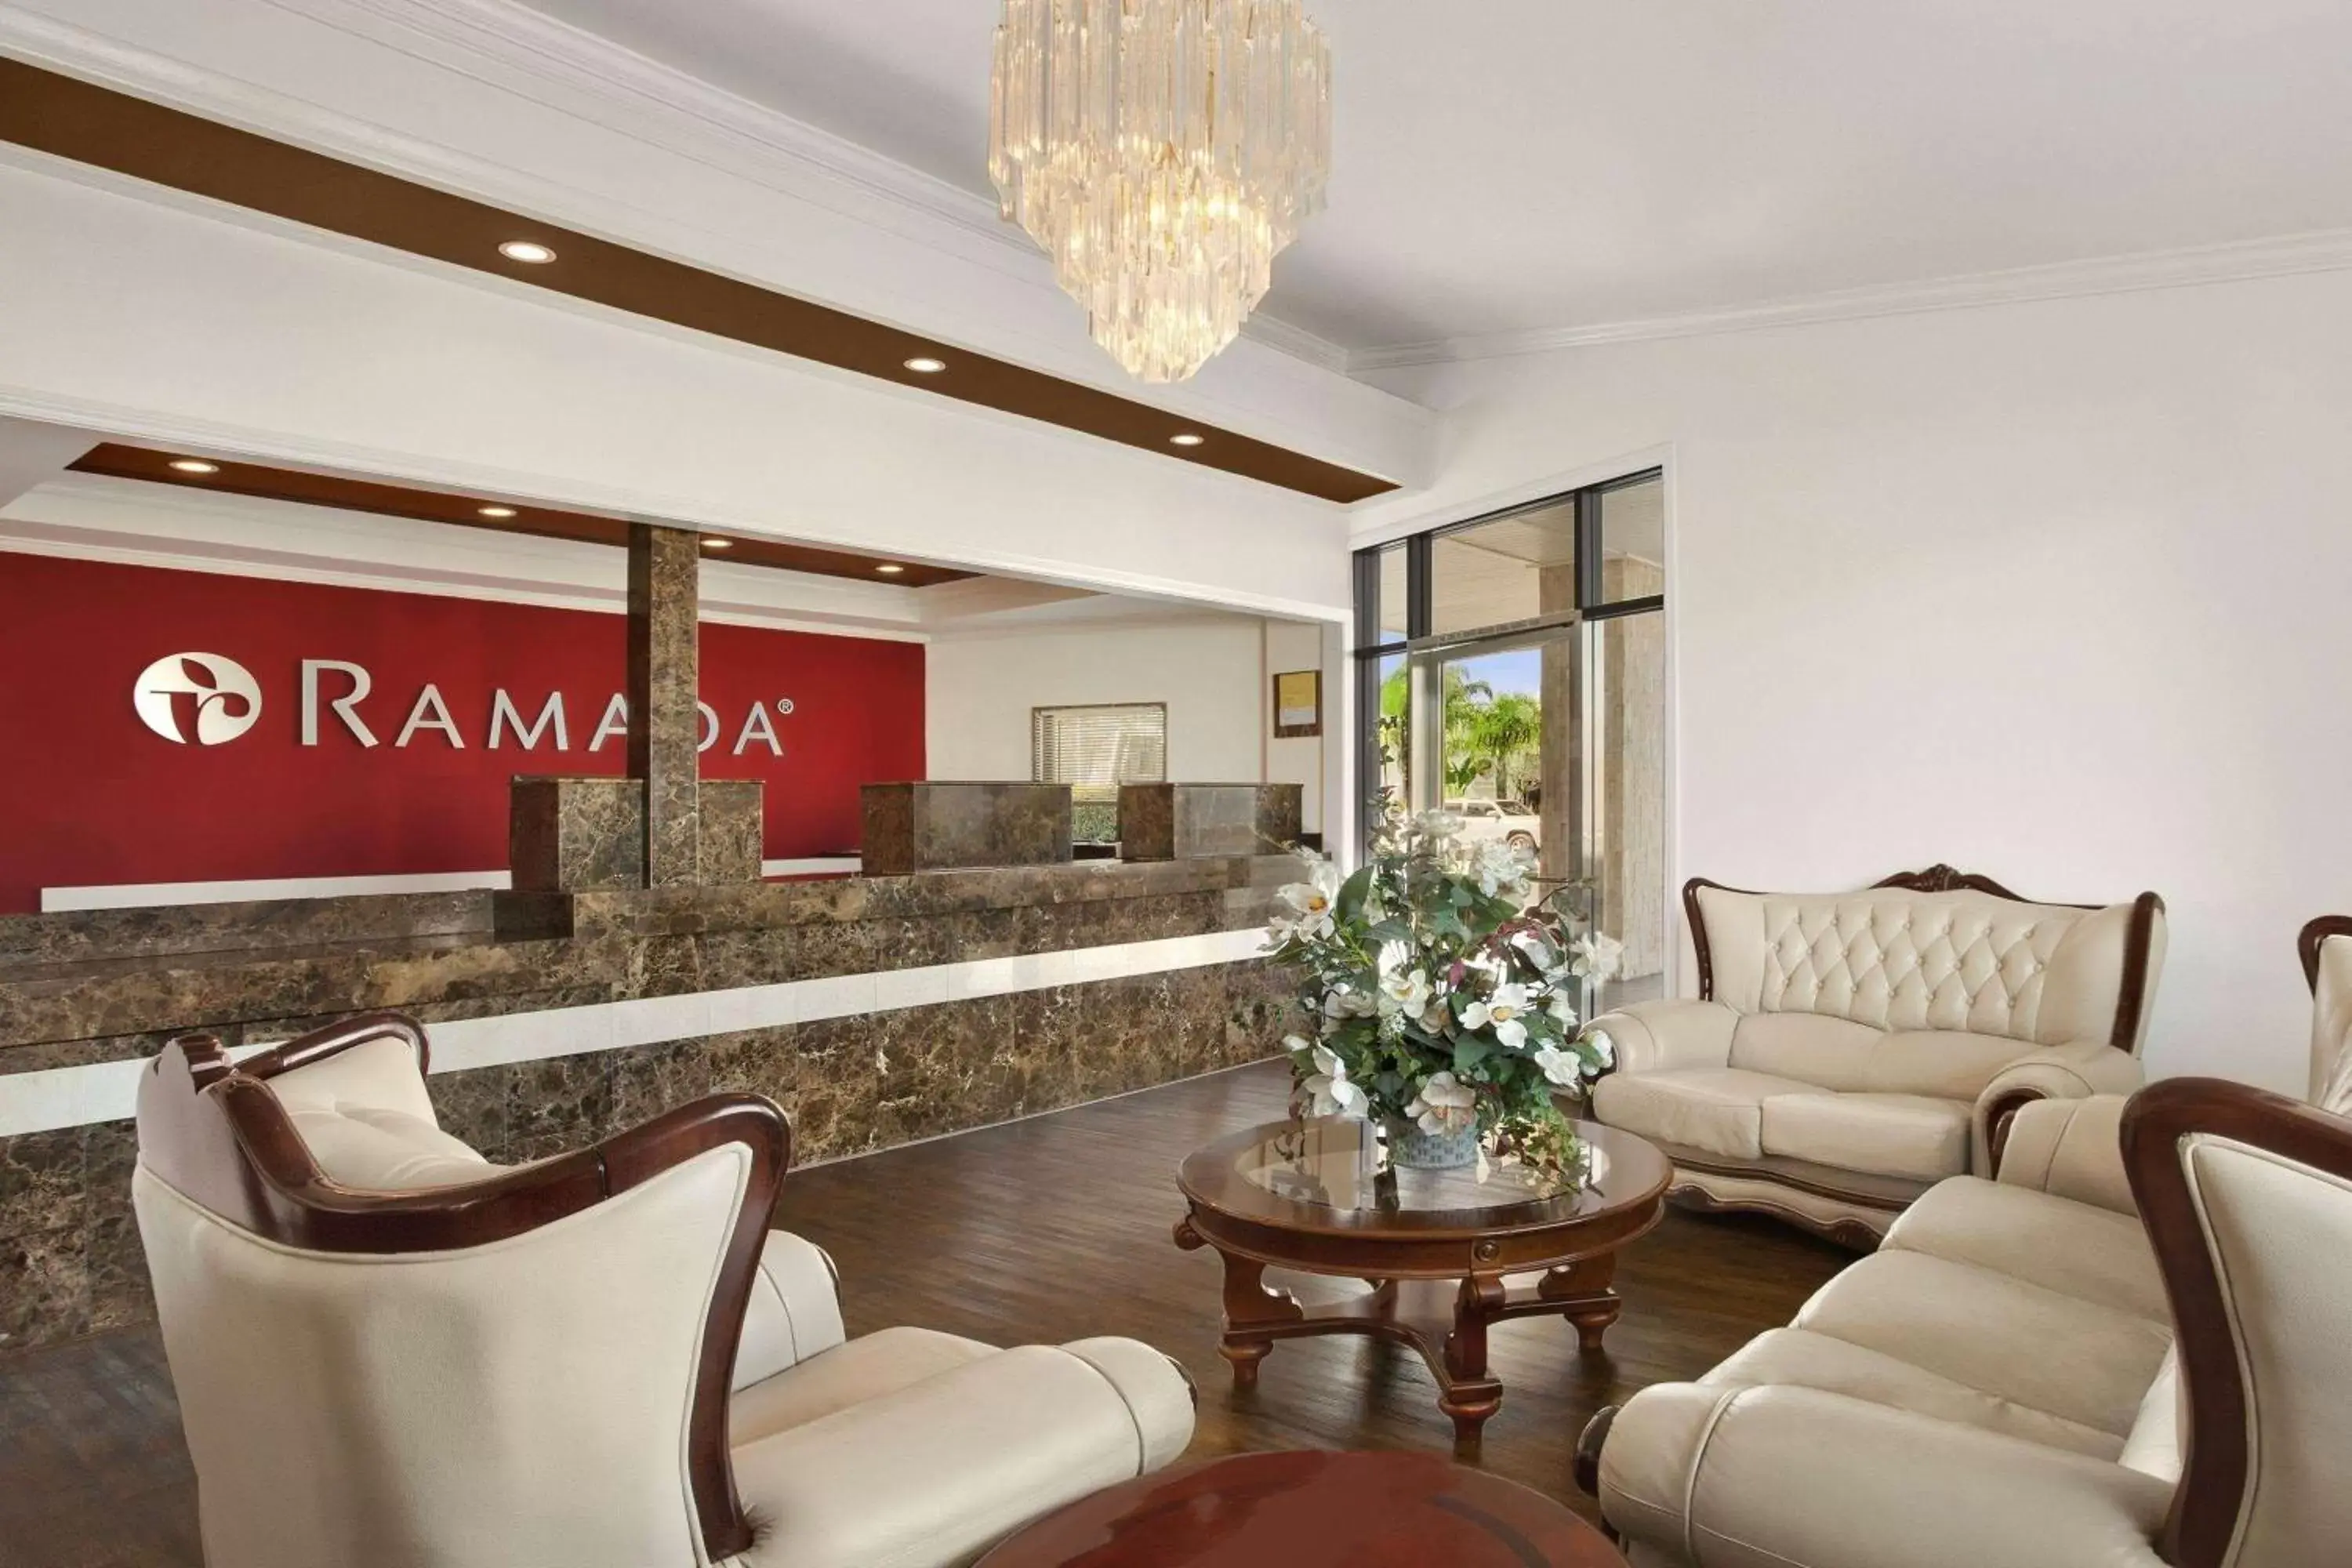 Lobby or reception, Lobby/Reception in Ramada by Wyndham Torrance